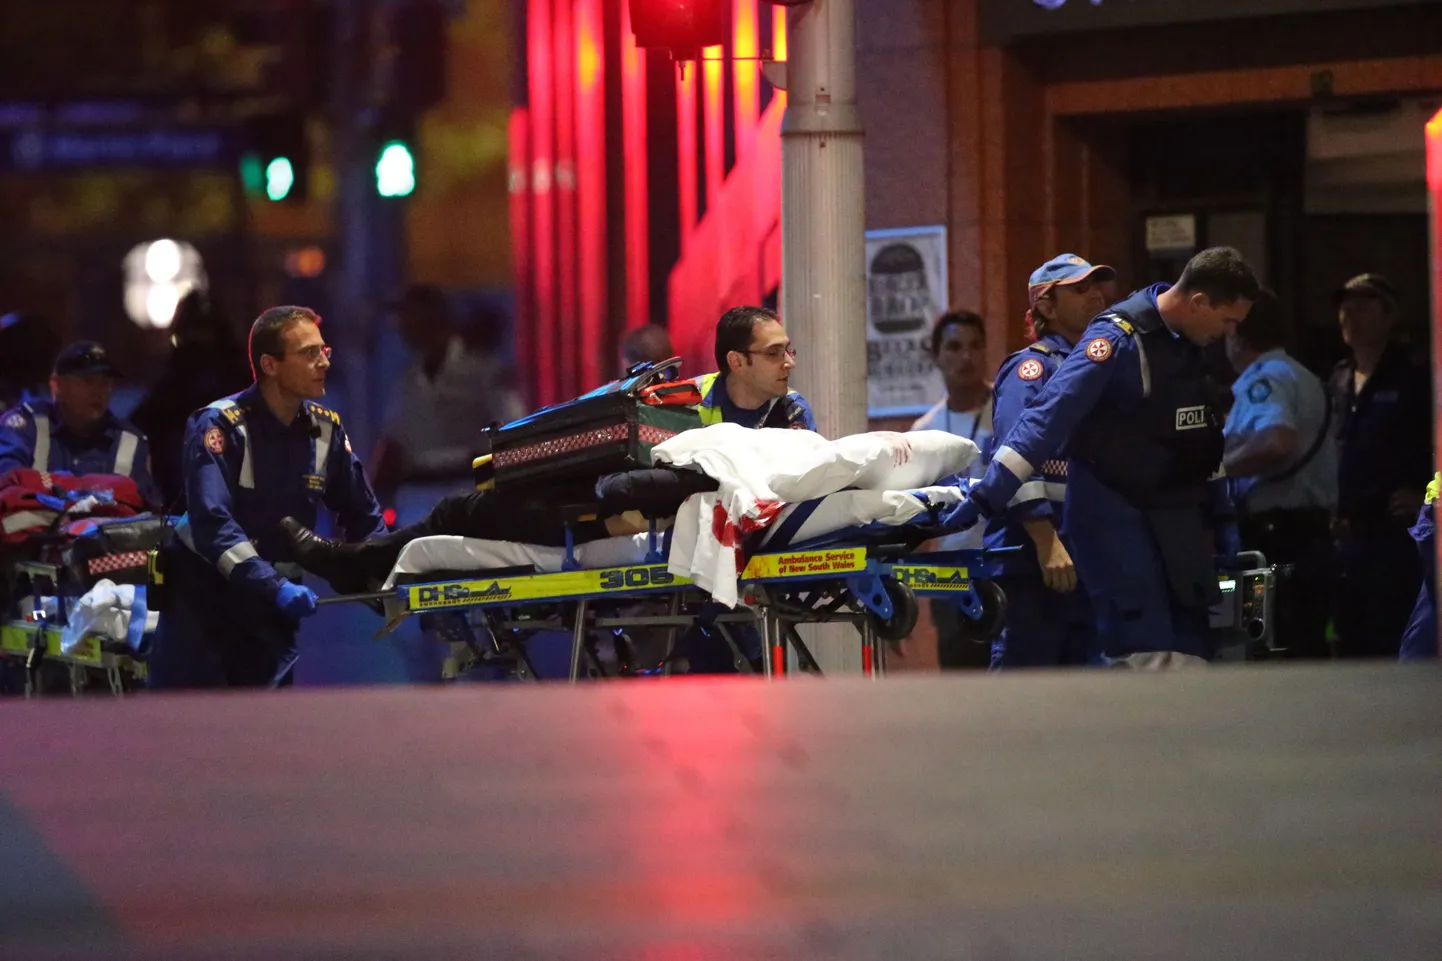 Австралийские медики везут на носилках раненого заложника.